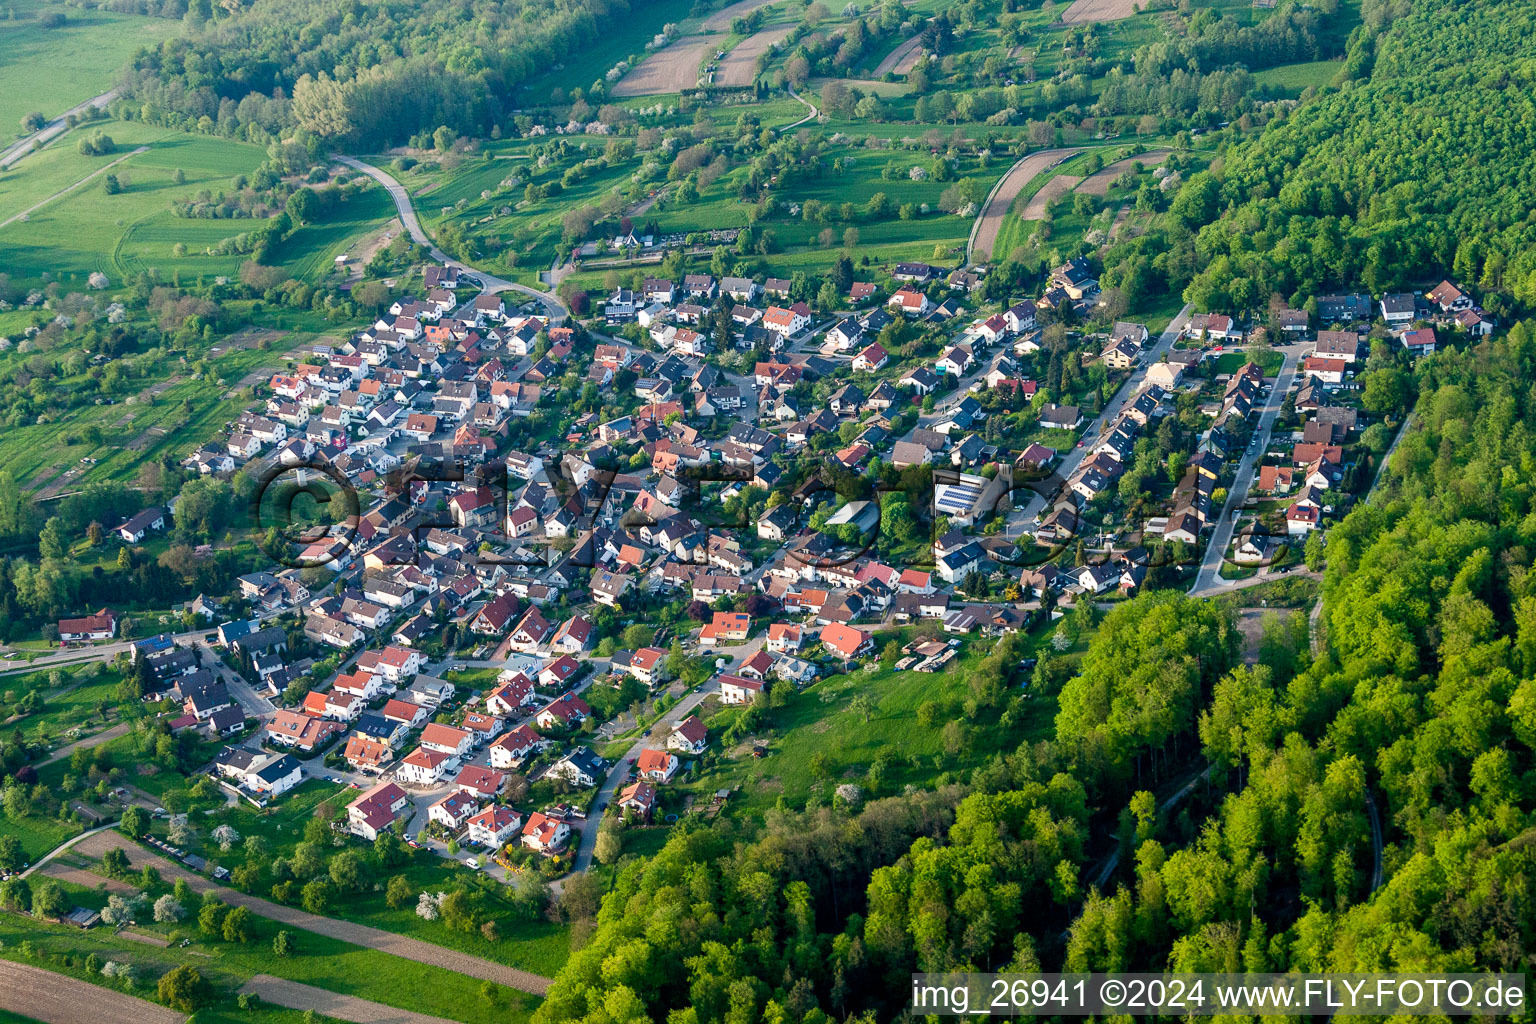 Luftbild von Dorf - Ansicht am Rande von landwirtschaftlichen Feldern und Nutzflächen in Sulzbach in Malsch im Bundesland Baden-Württemberg, Deutschland